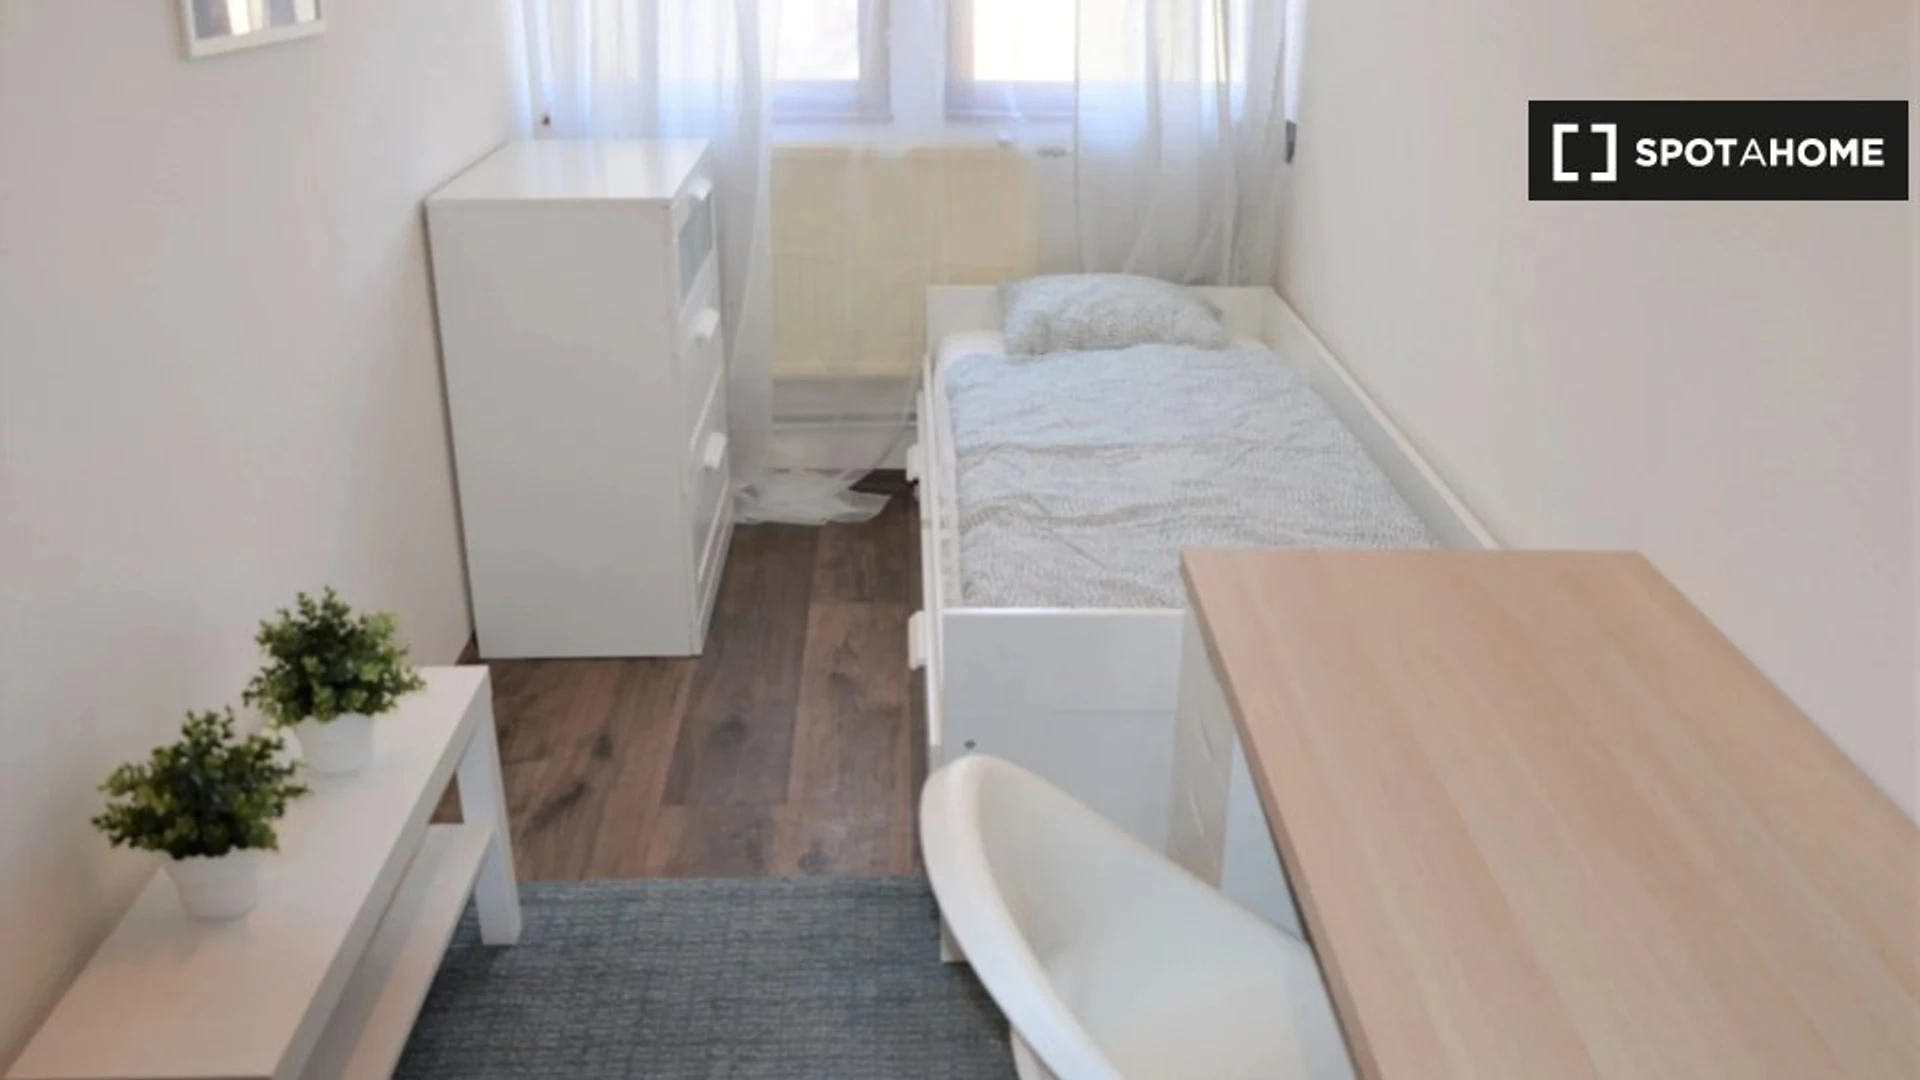 Alquiler de habitación en piso compartido en Praga